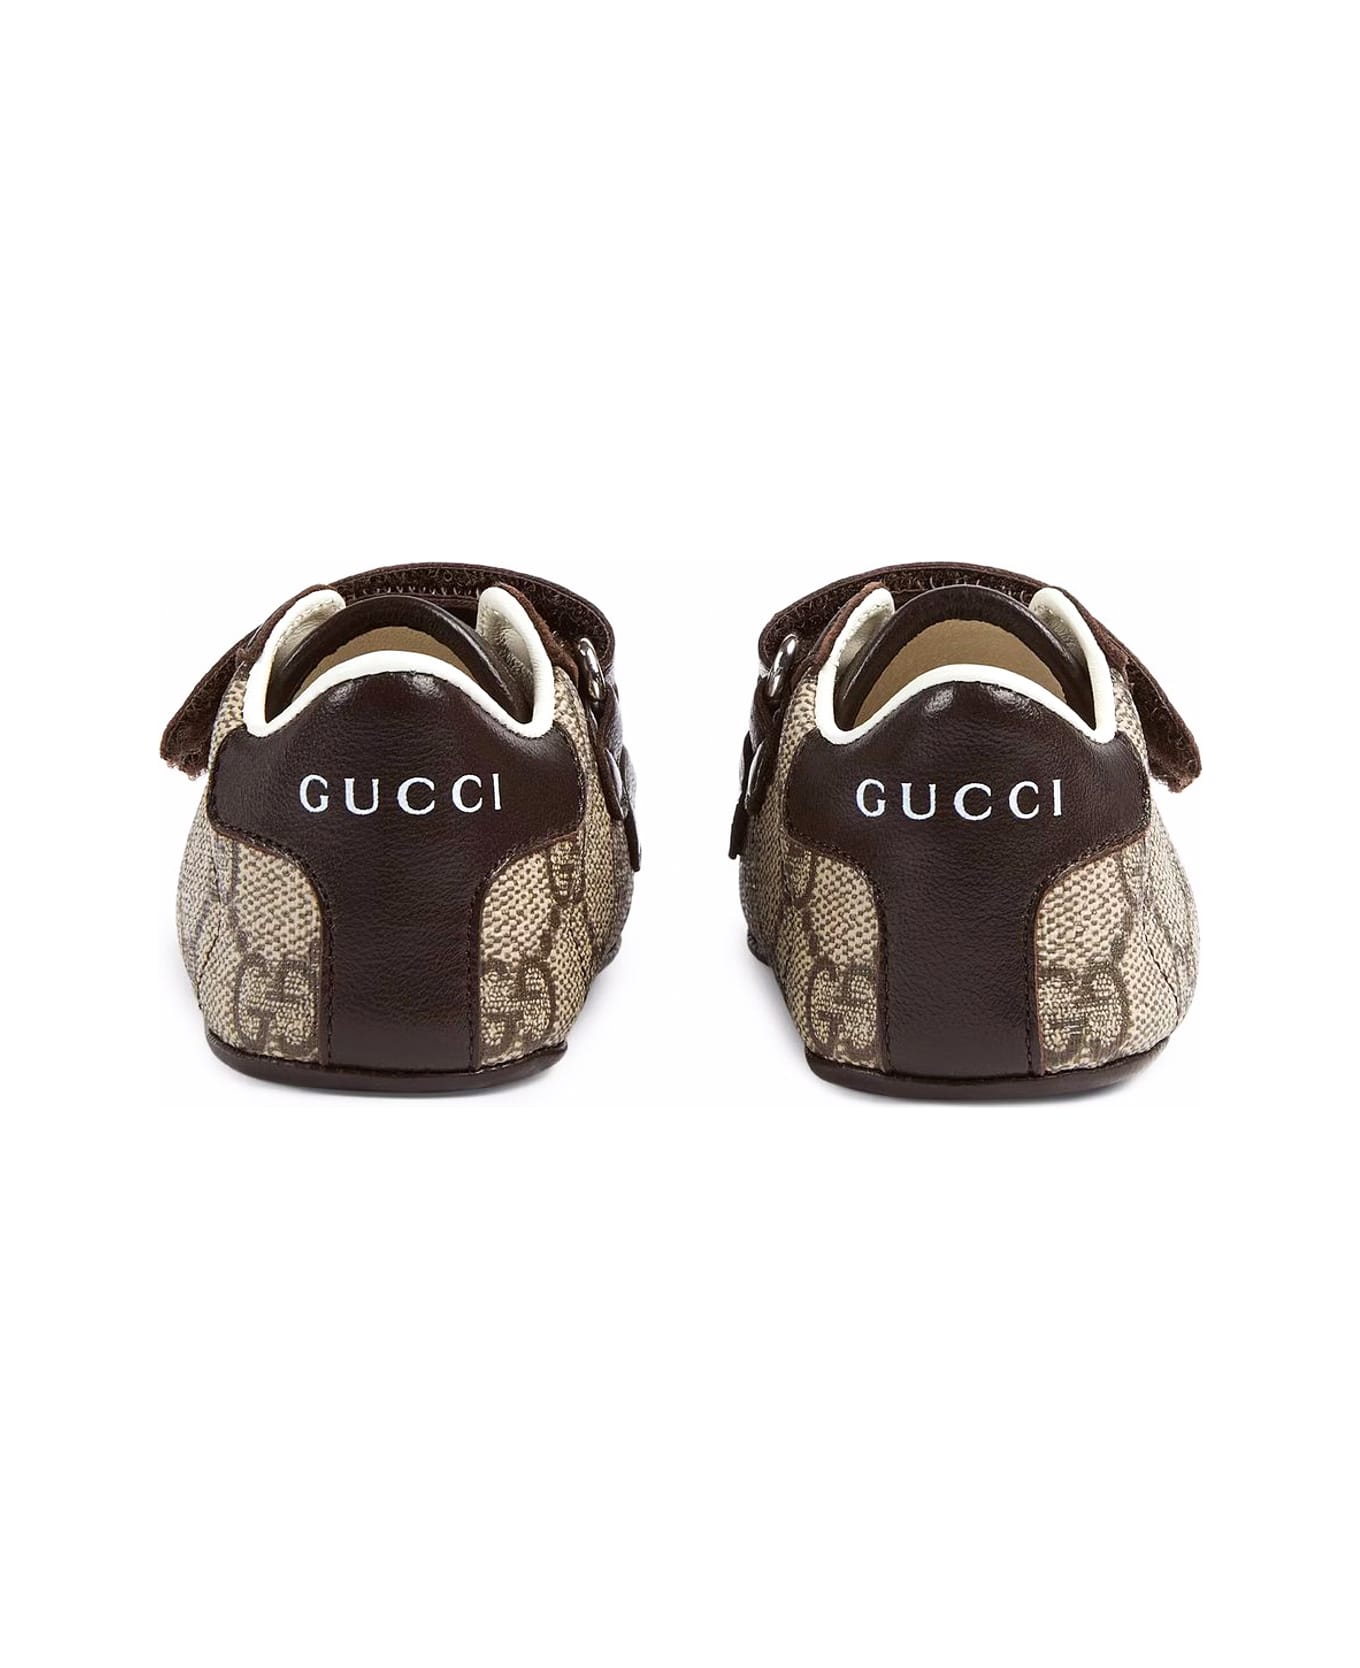 Gucci Kids Boots Beige - Beige